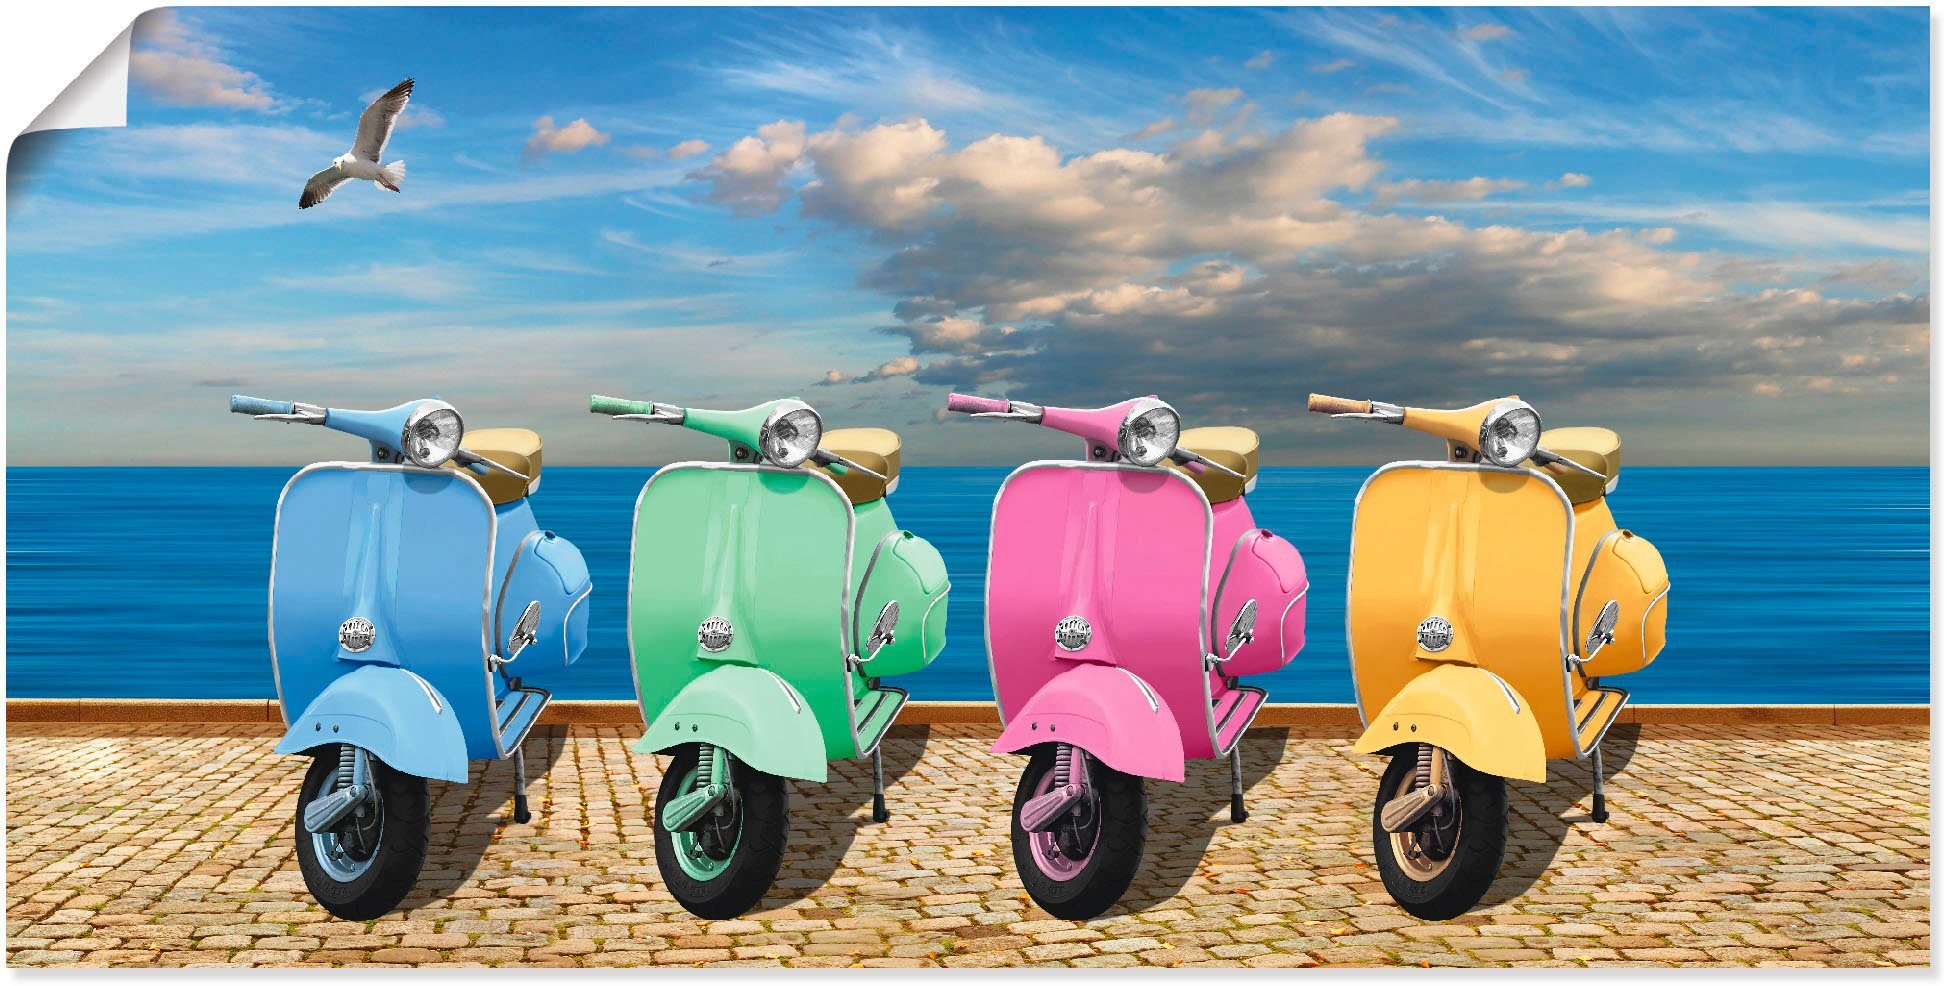 Artland Artprint Vespa-scooter in bonte kleuren in vele afmetingen & productsoorten - artprint van aluminium / artprint voor buiten, artprint op linnen, poster, muursticker / wandf